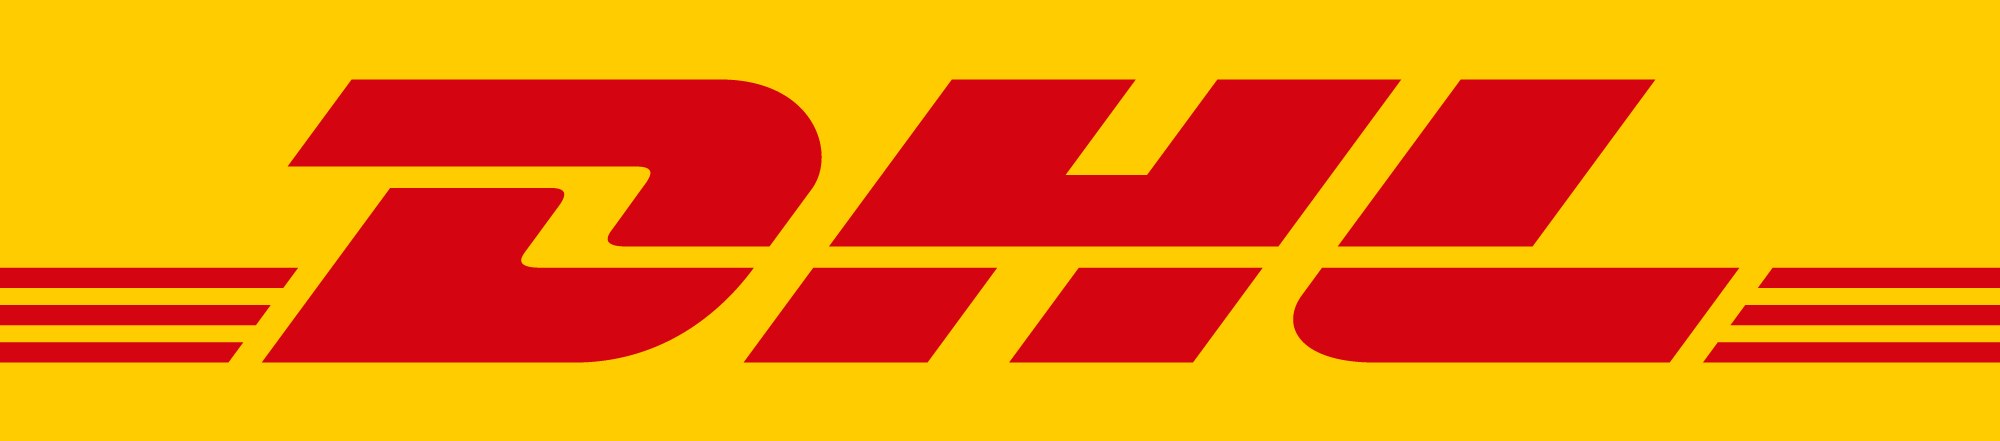 DHL Global Forwarding (Hong Kong) Limited